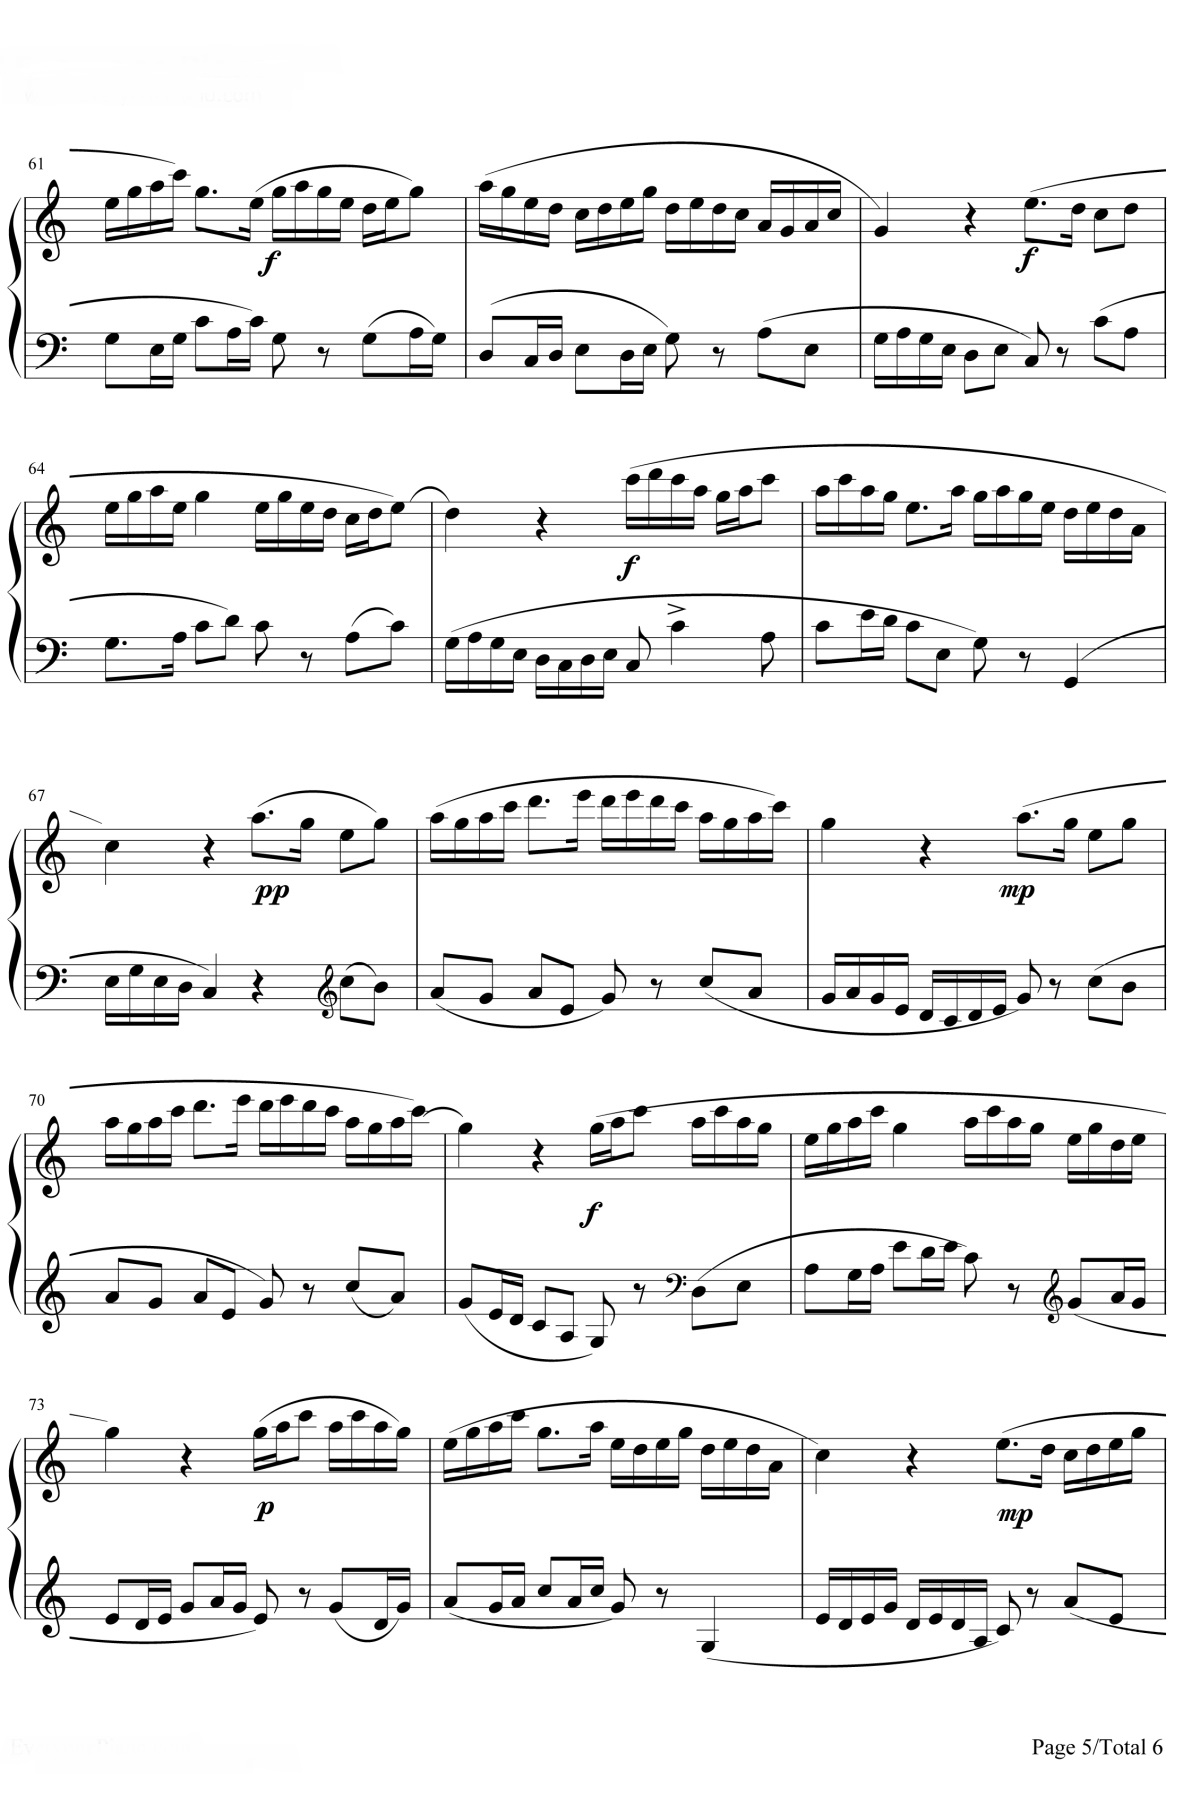 【牧童短笛】的钢琴谱简谱 – 贺绿汀